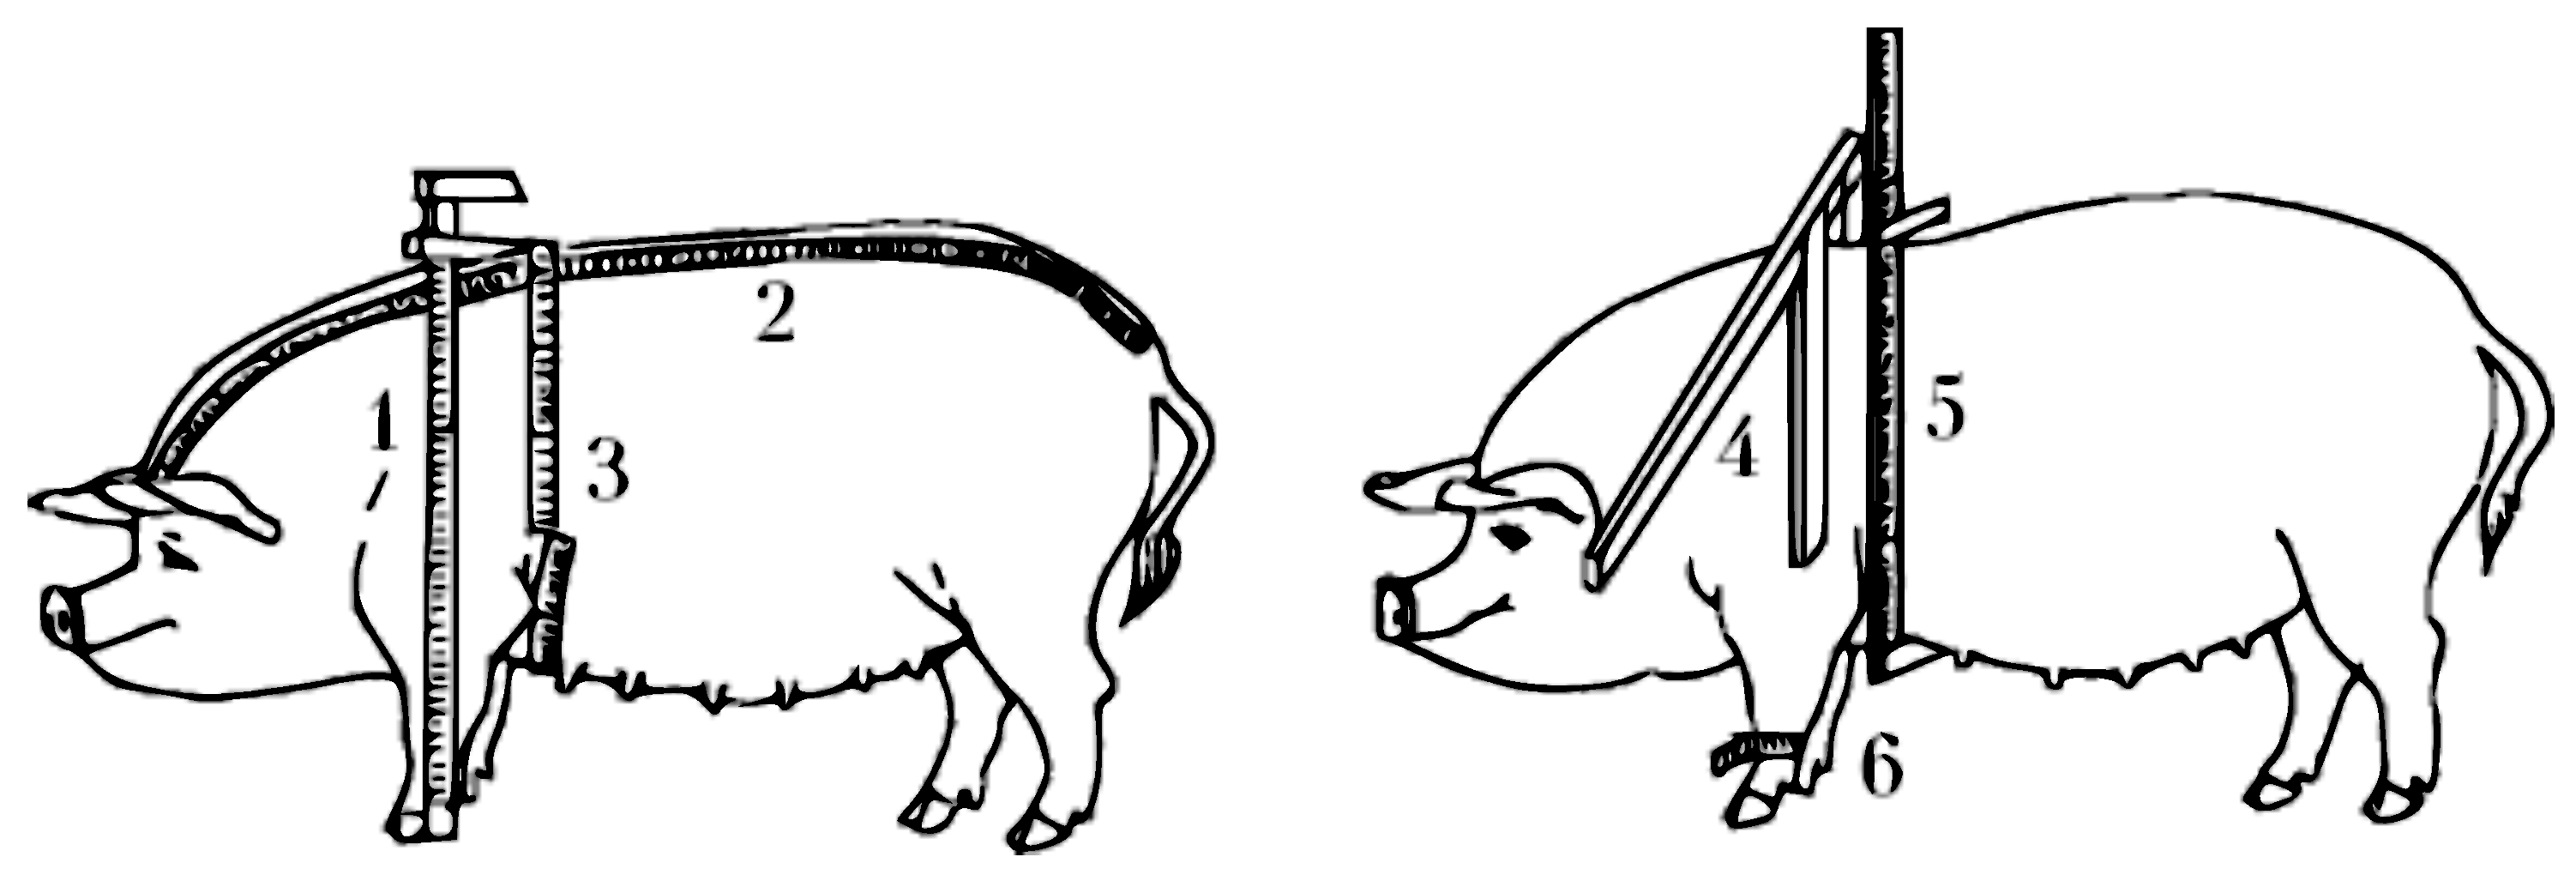 Живая масса свиньи. Измерение свиней промеры. Промеры КРС. Таблица промеров свиней. Точки взятия промеров у свиней.